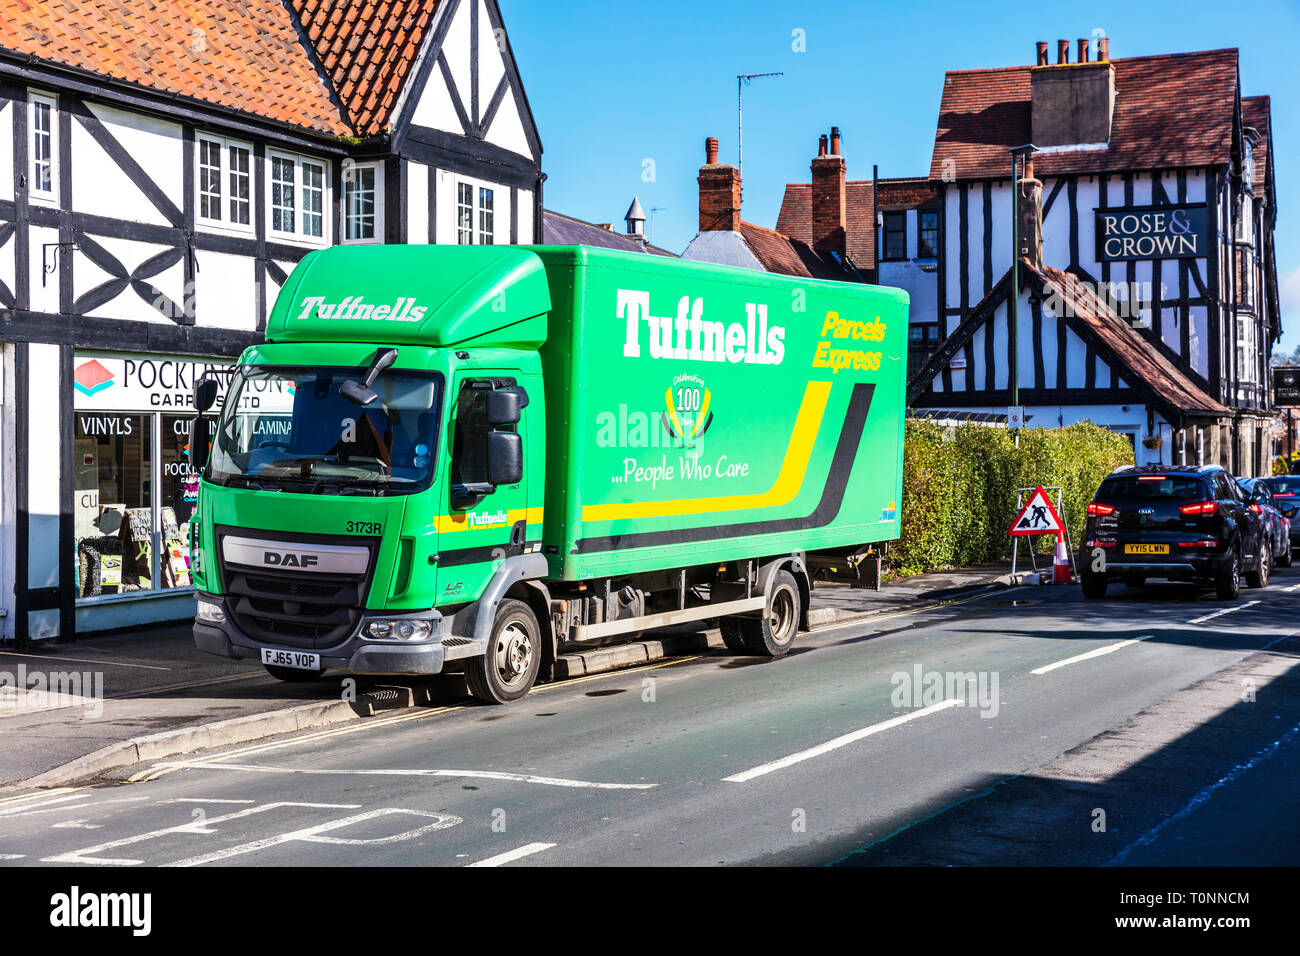 Livraison de colis Tuffnells van, camion, livraison Tuffnells Tuffnells camion, camion, colis Tuffnells Tuffnells, livraison de colis, livraison Tuffnells van, Banque D'Images